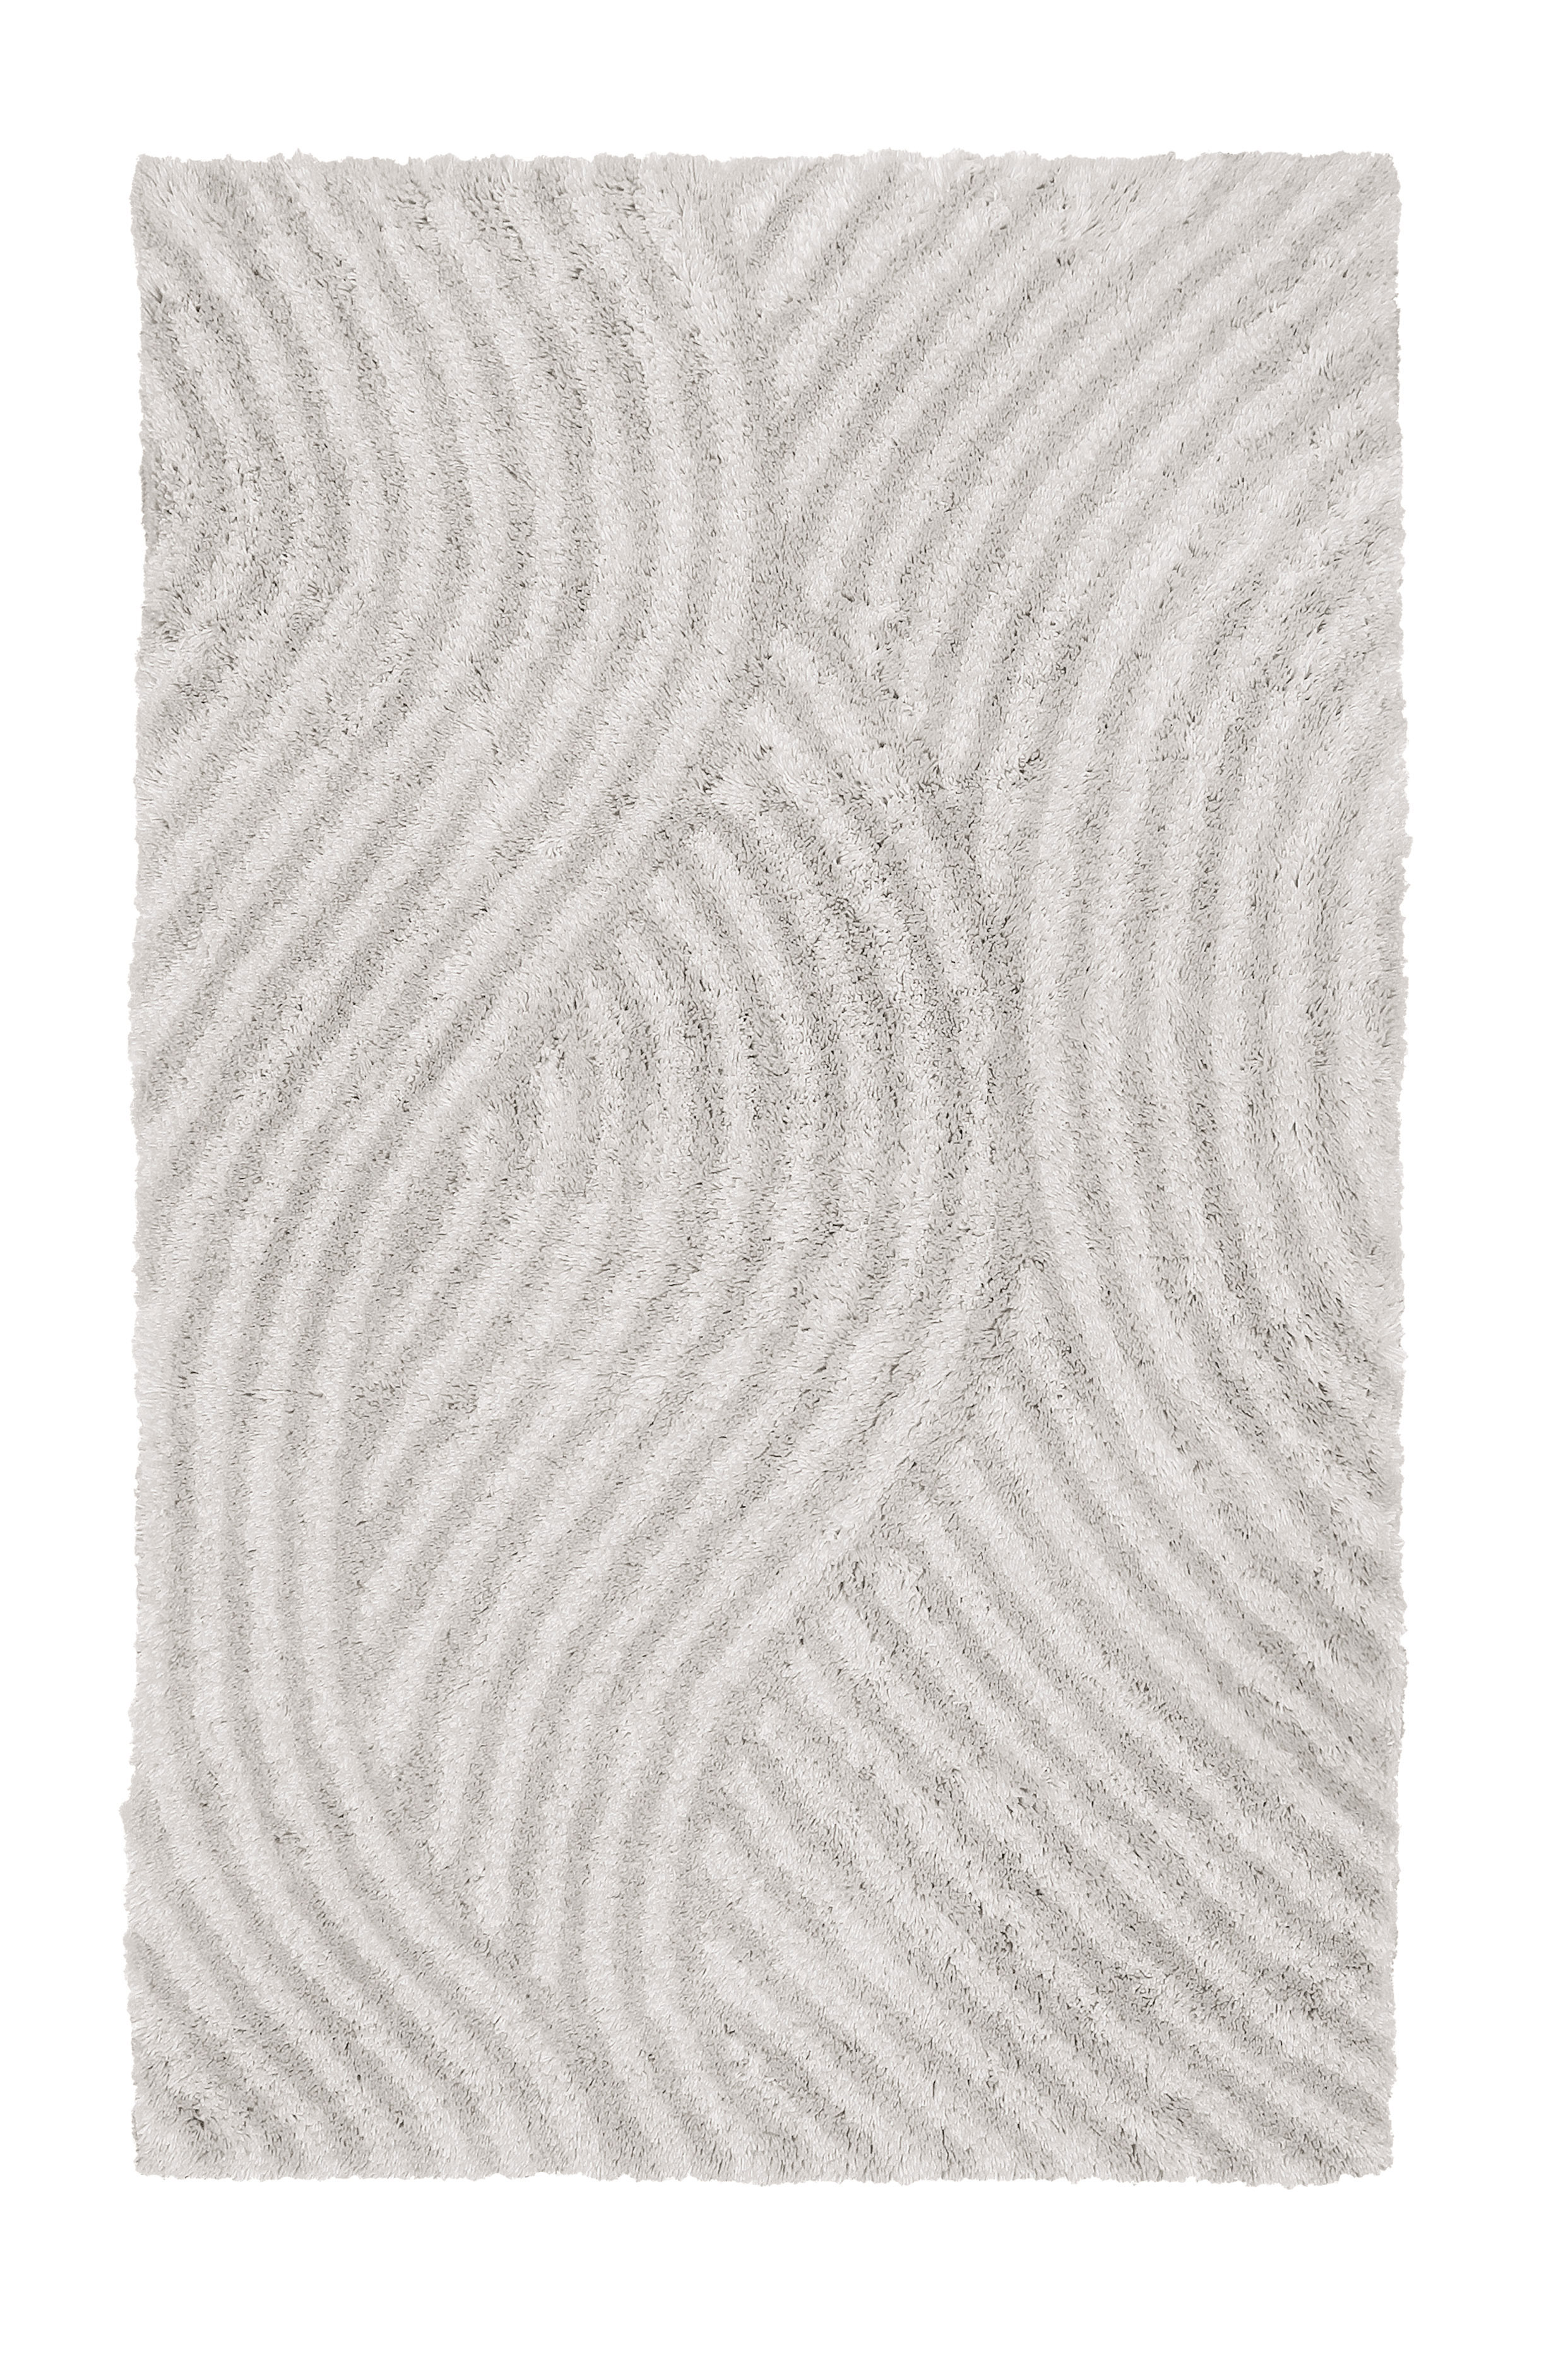 Badteppich, Calma Nebel,  60x 60 cm